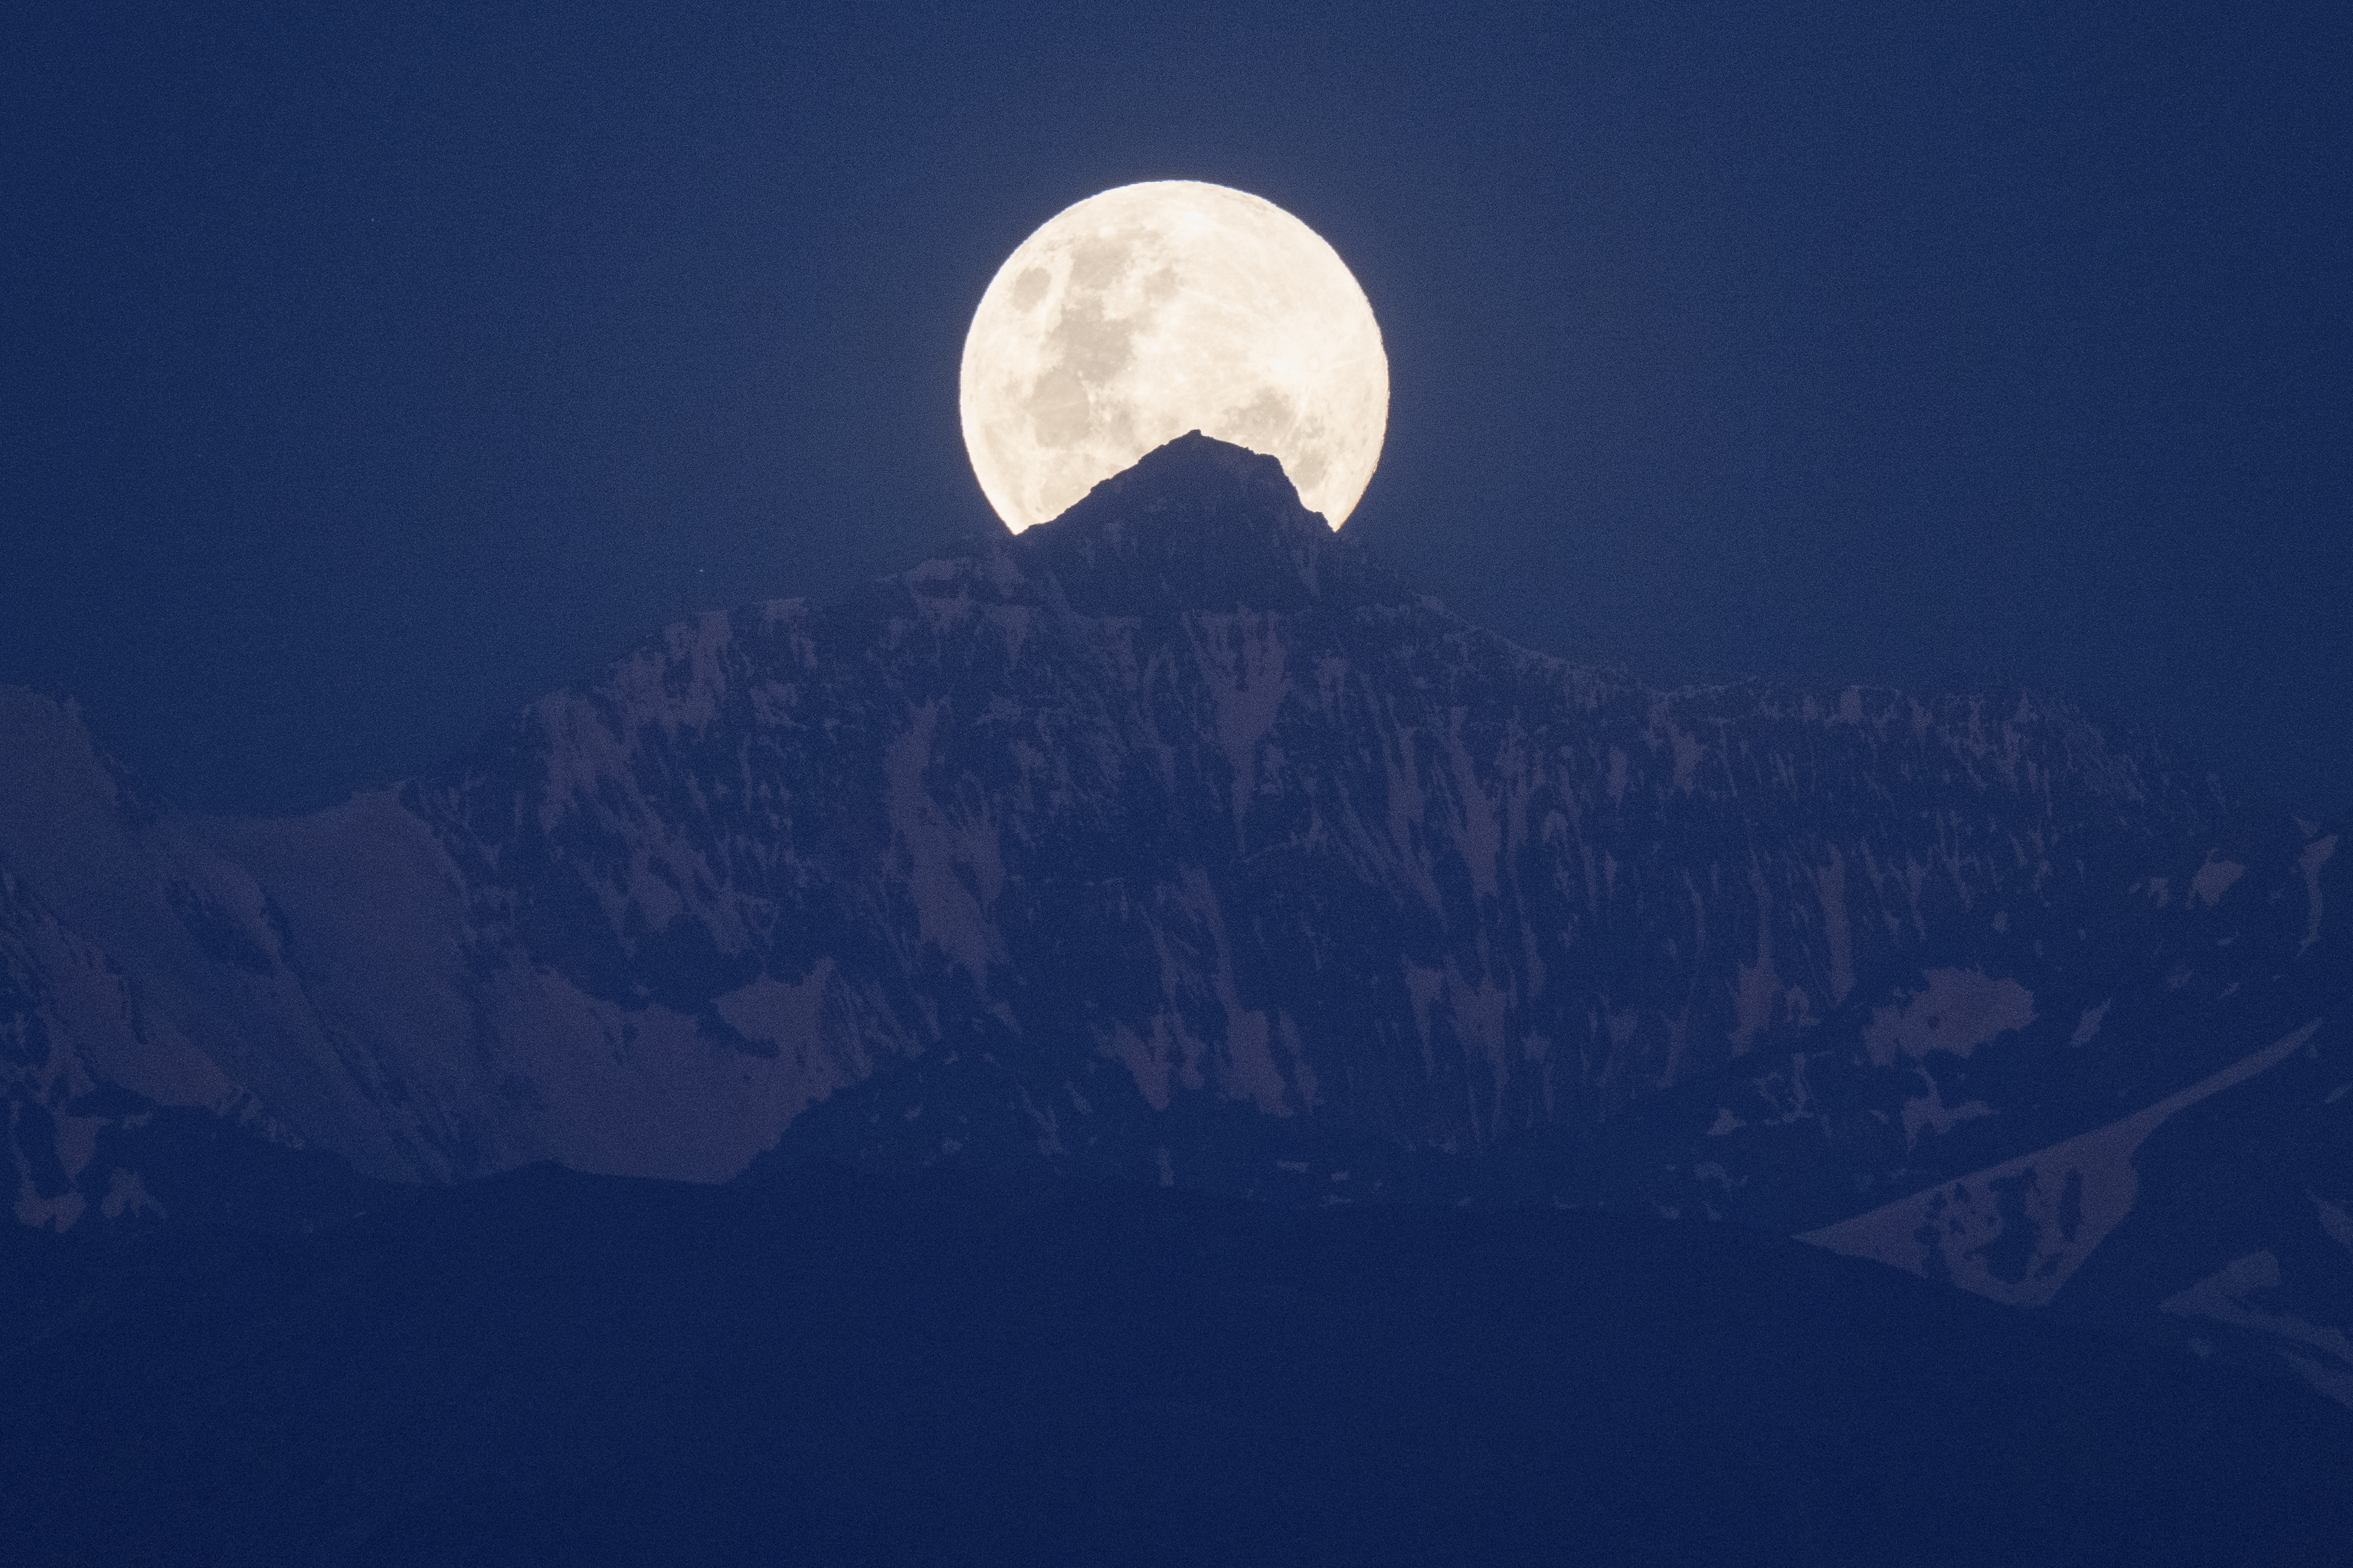 La luna llena, tras unas montañas.